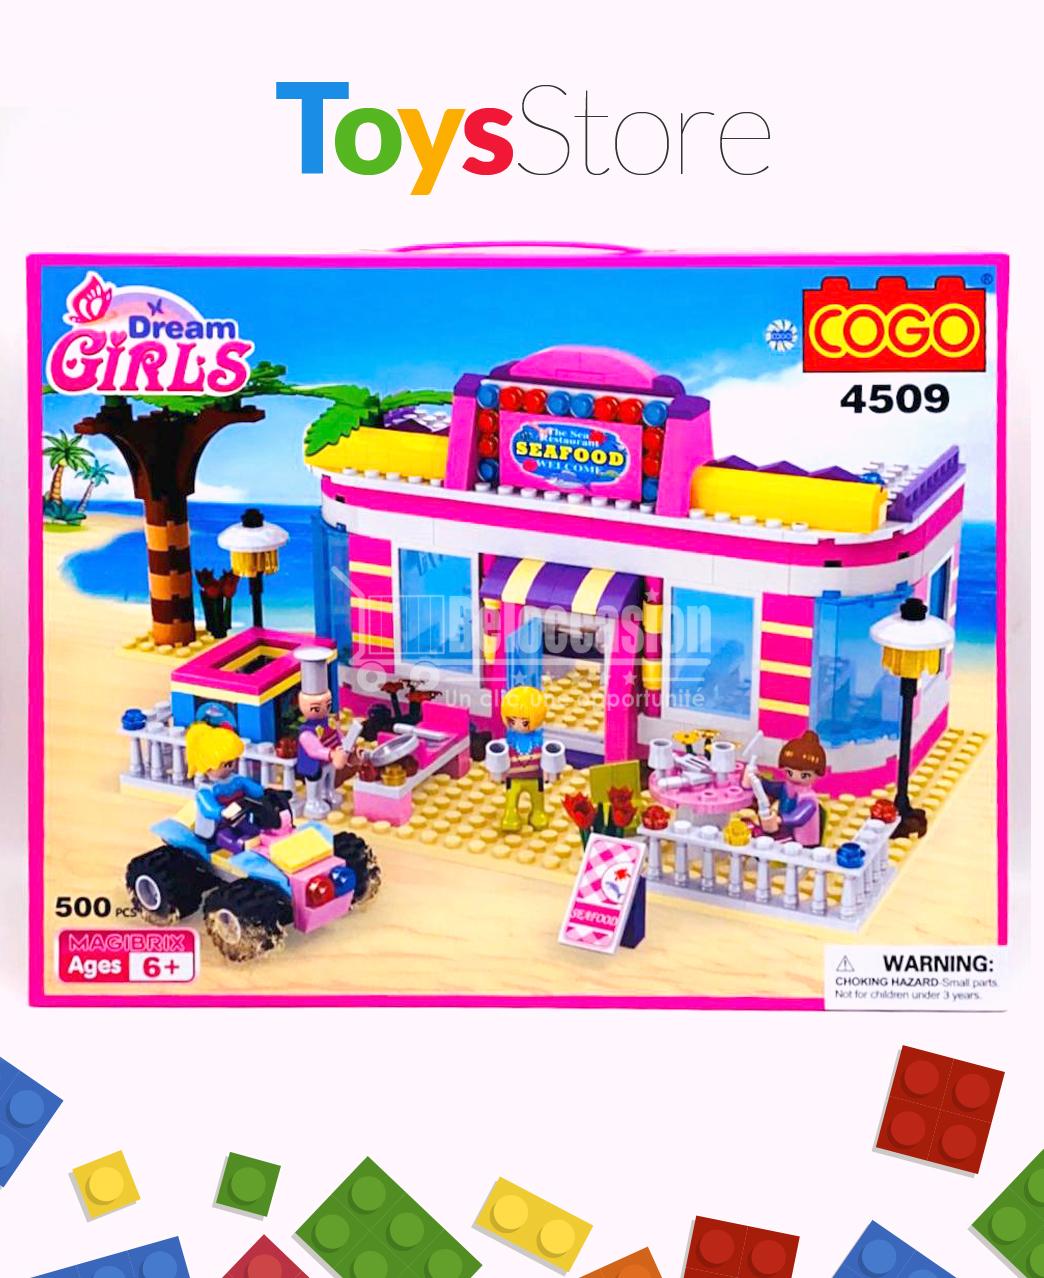 https://www.beloccasion.com/watermark.php?file=1590258988-jouet-lego-pour-fille-enfants-cafe-fille-en-lego-maroc-hotwheel-jouets-montessori-premier-jouet-montessori-des-jouets-montessori-e-veil-montessori-jouet-be-be-9-mois-montessori-jouet-be-be-18-mois-jouet-et-enfants-beloccasion.jpg